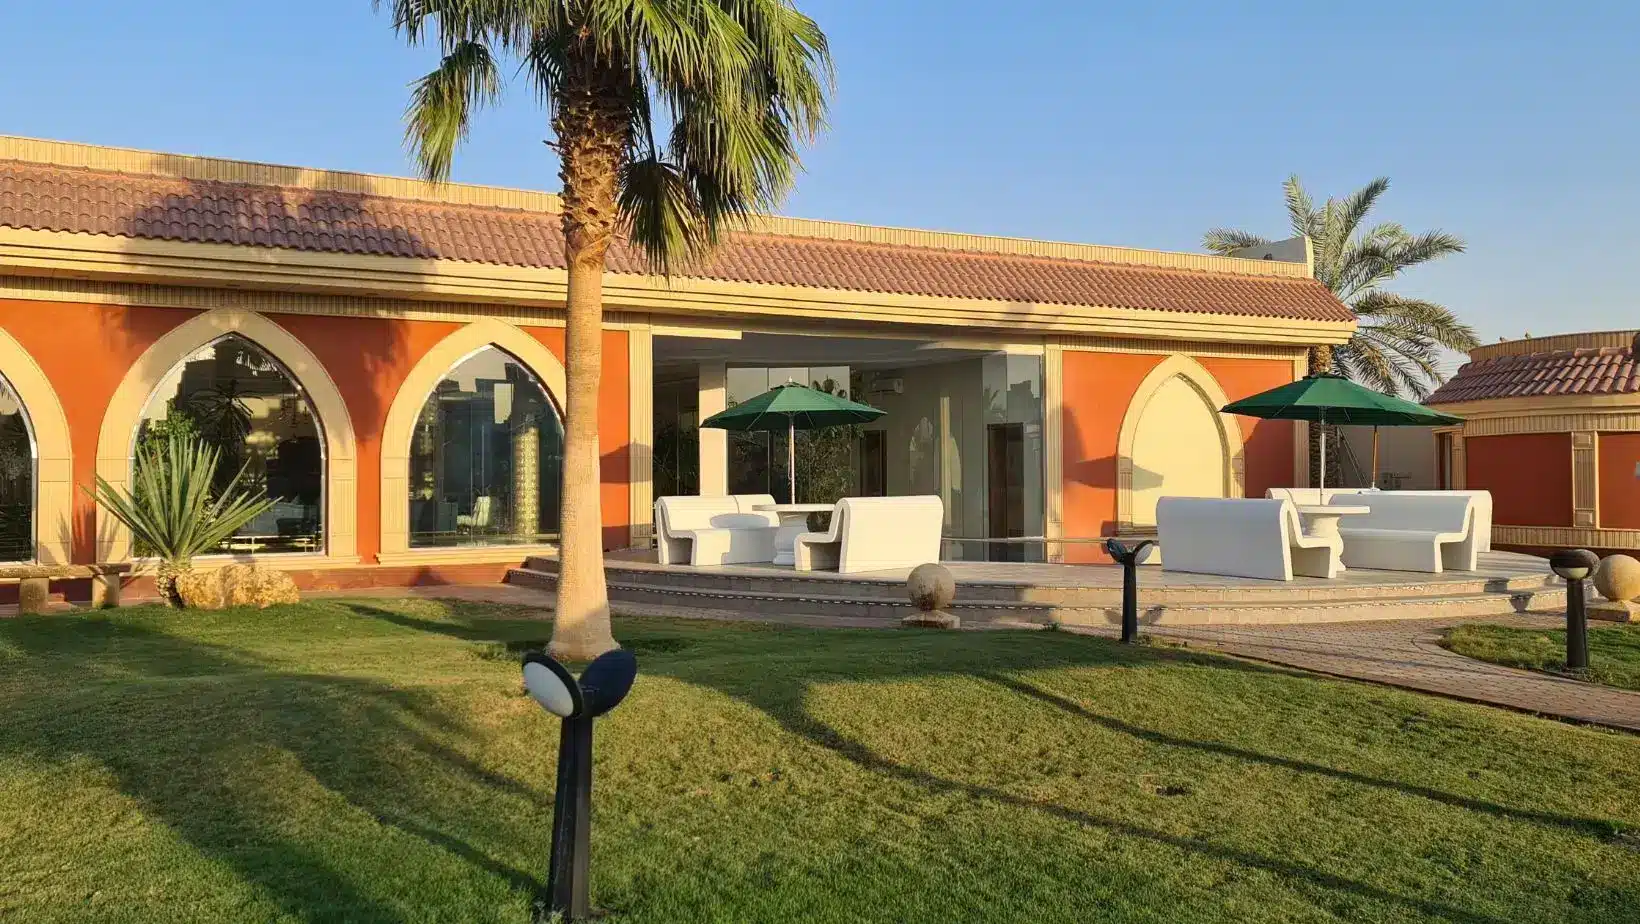 منتجع الجبيلة بالرياض، وحدات فندقية للإيجار، Al Jubaila Resort in Riyadh, hotel units for rent